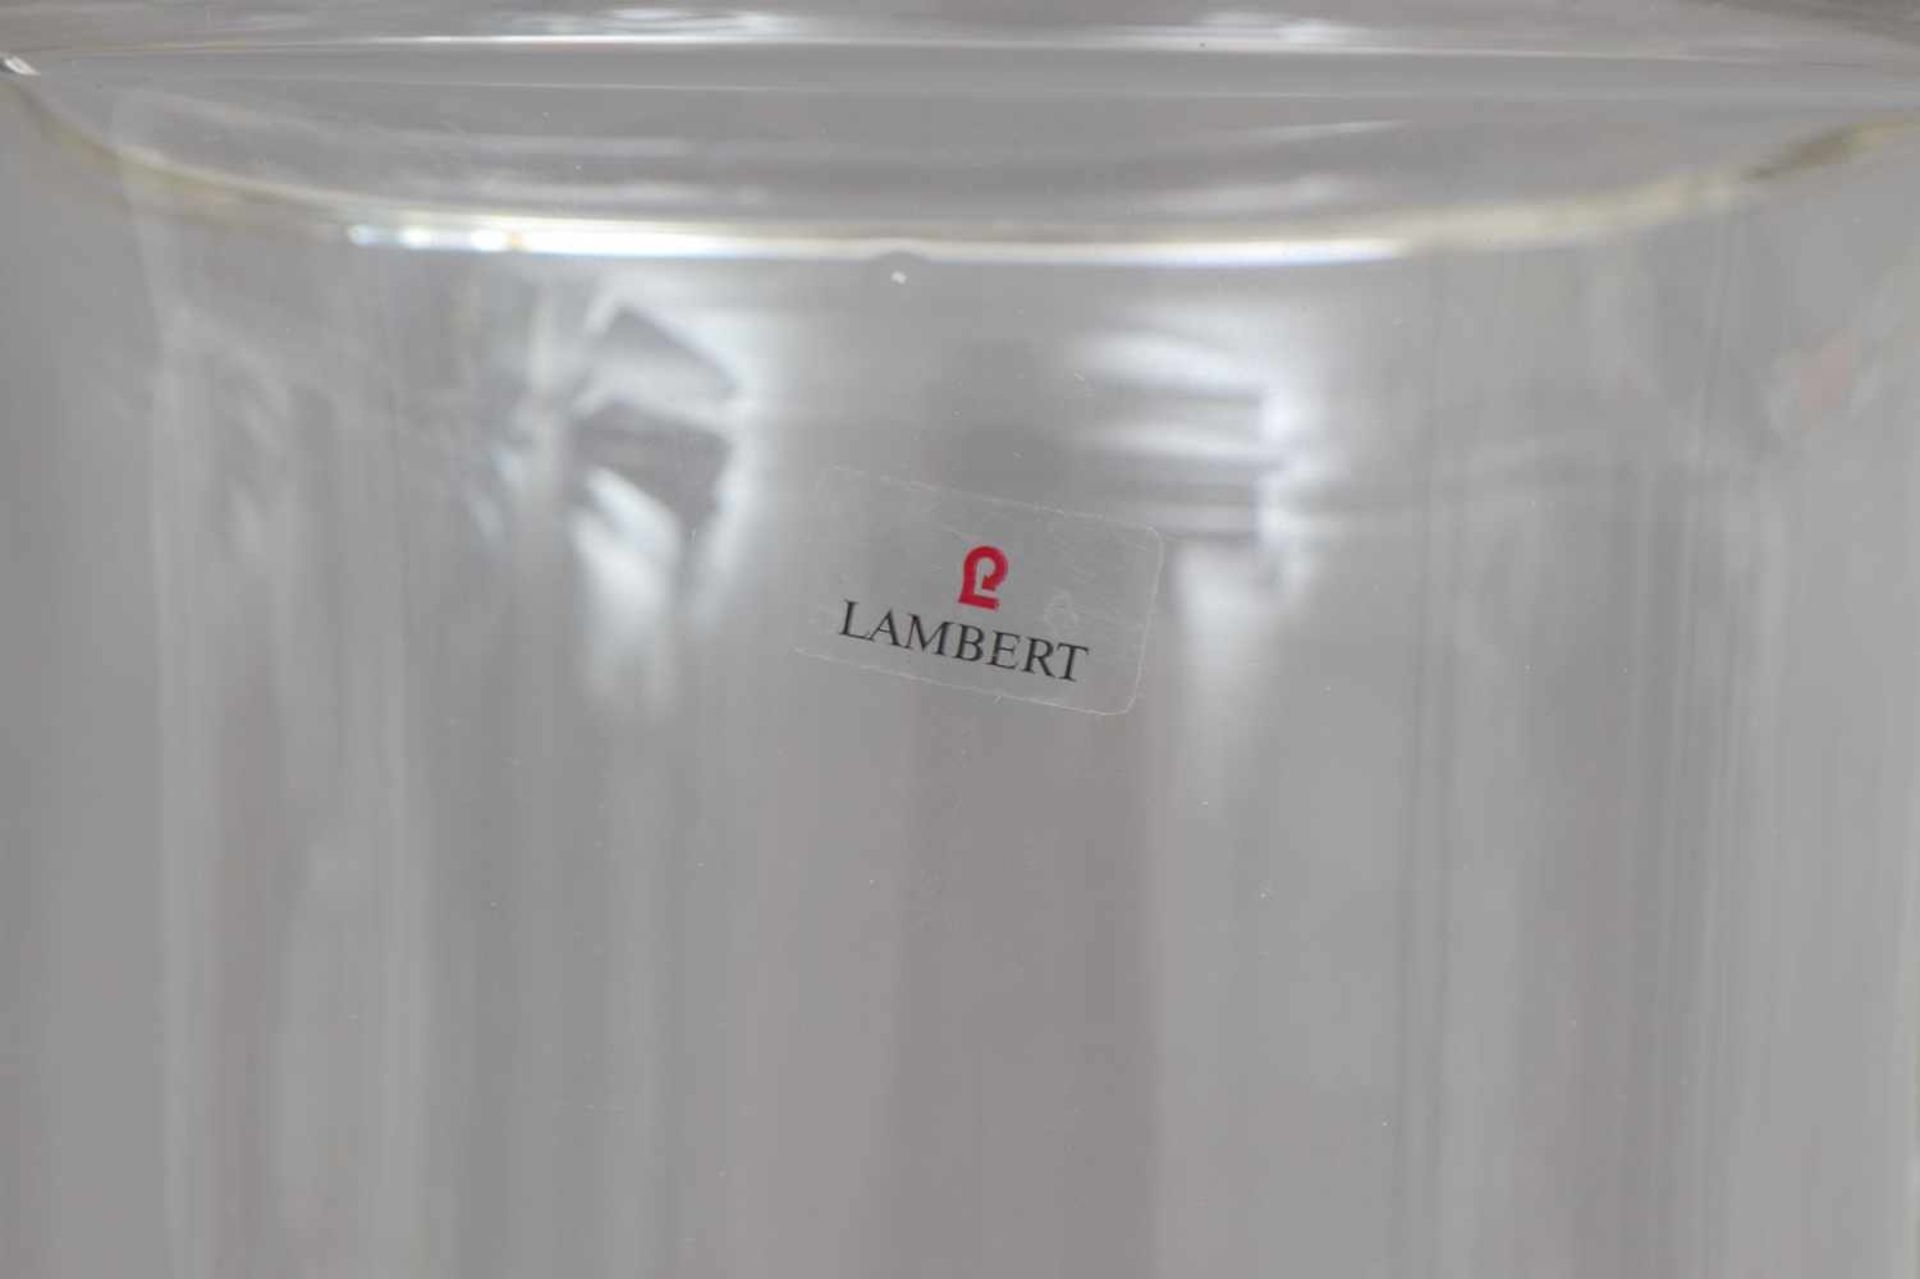 GUNTER LAMBERT Windlicht ¨Veneto¨Kristall-Glas, zylindrischer Korpus auf eingezogenem Rundstand, - Bild 3 aus 3